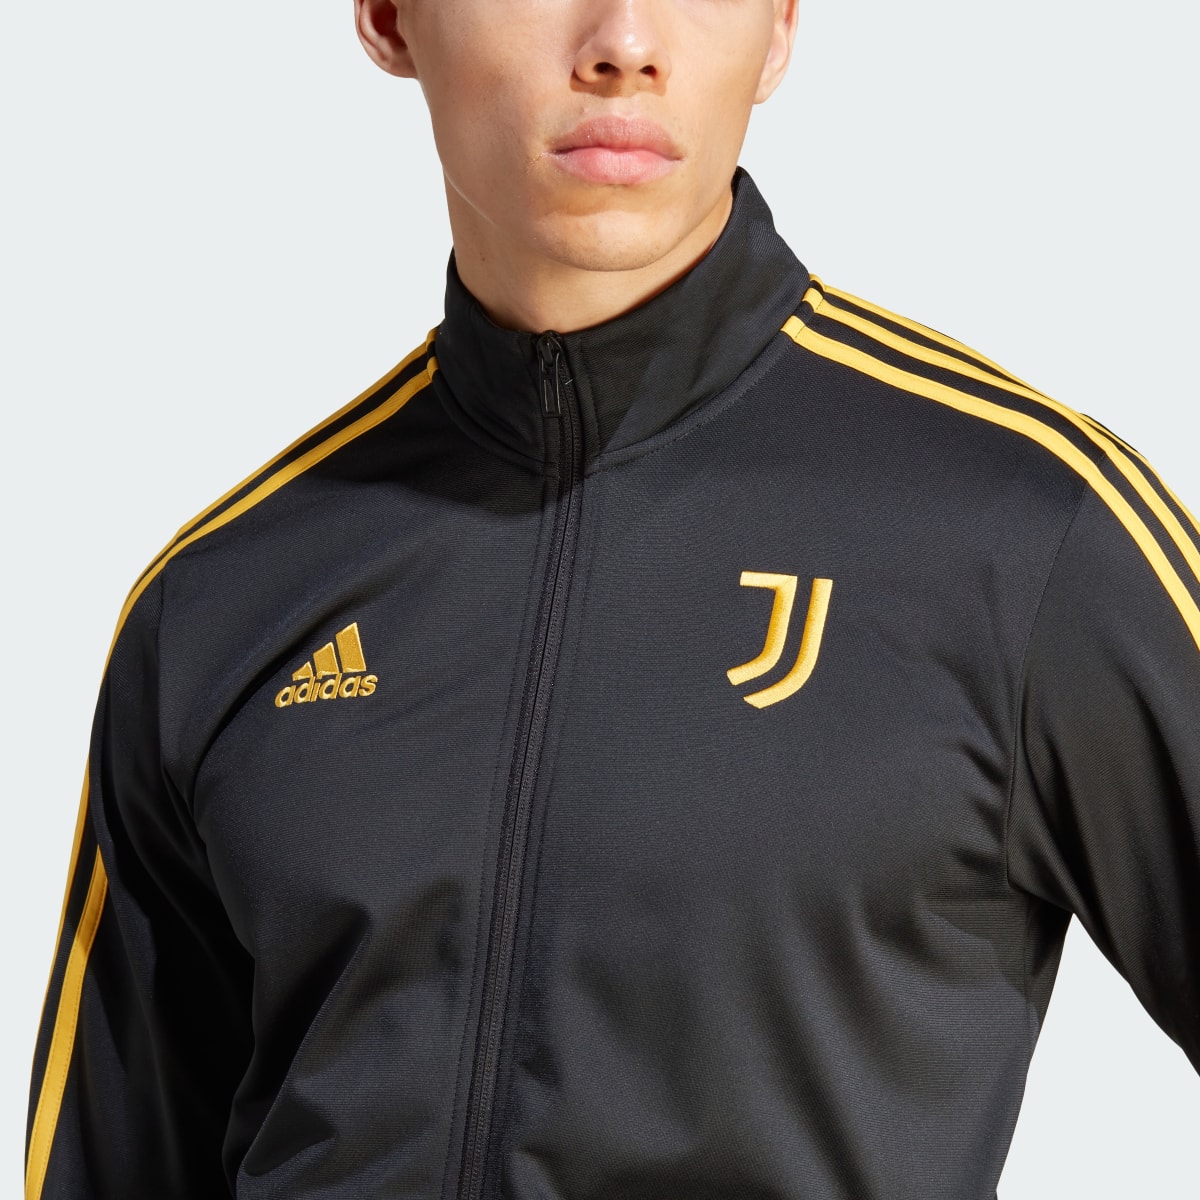 Adidas Giacca da allenamento DNA Juventus. 6